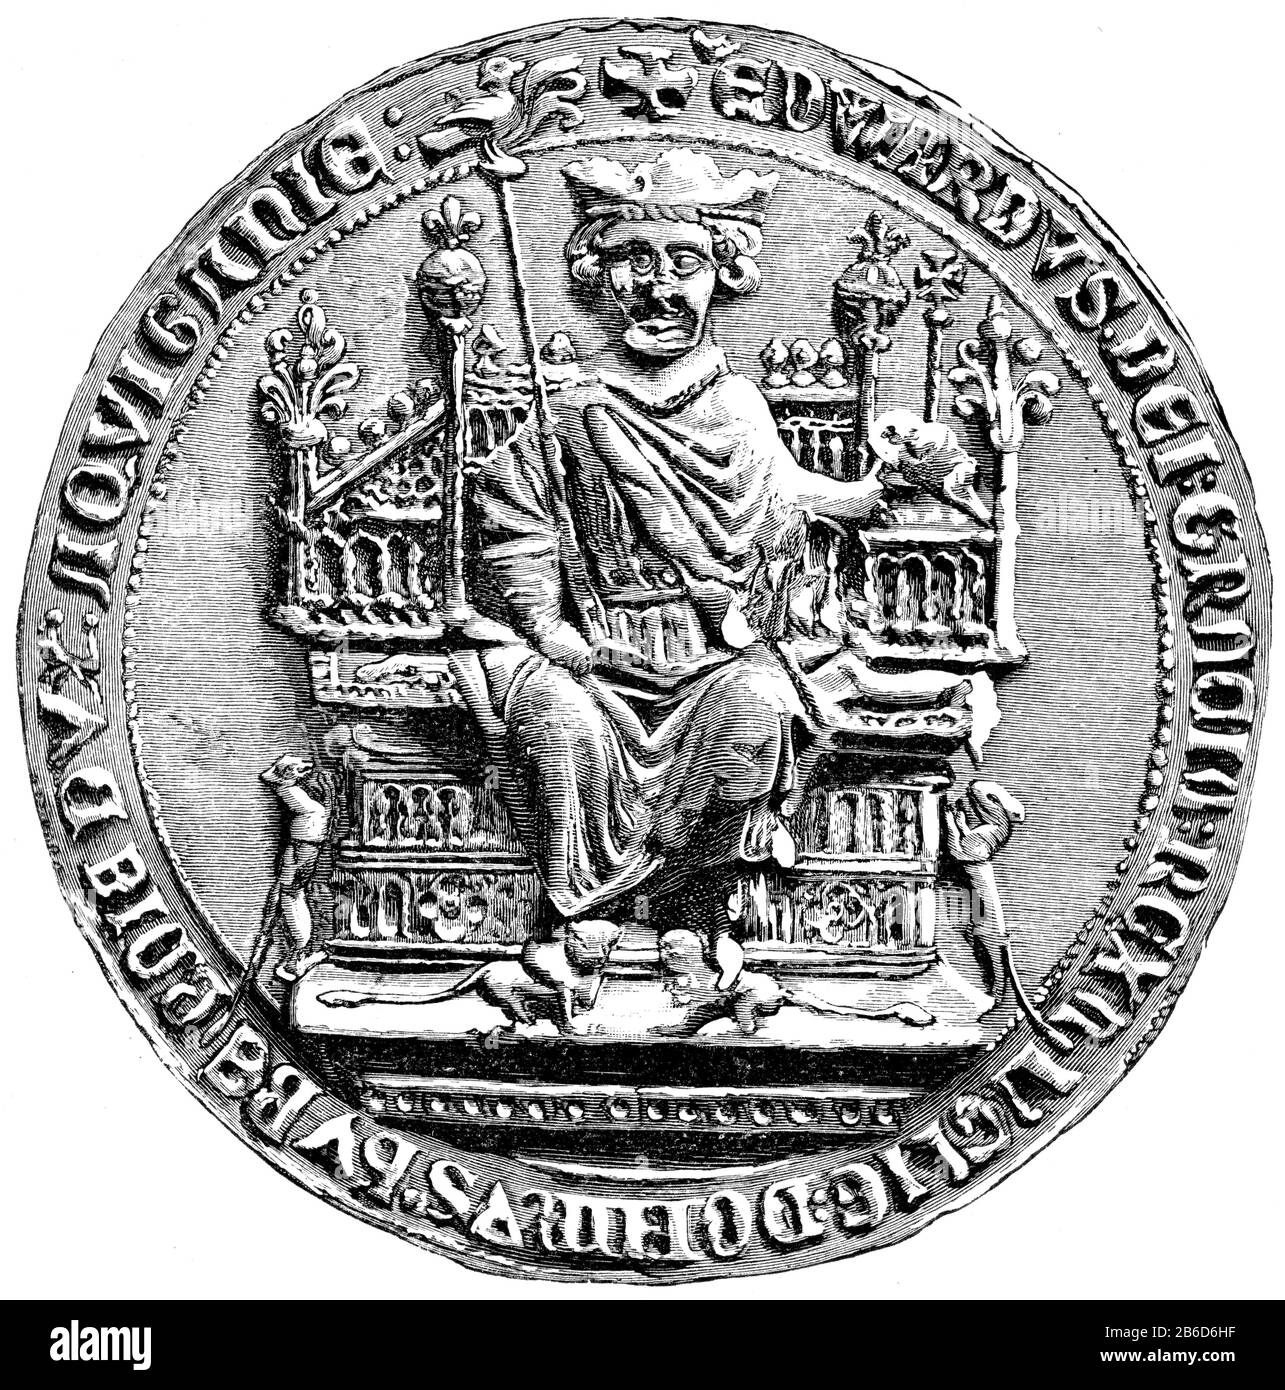 Grande sigillo di Edoardo i, 11 ° secolo. Qualche tempo prima dell'anno 1066 Edoardo il Confessore (c1003-1066) iniziò ad usare un 'Grande Sigillo' per indicare che un documento portava la forza della sua volontà. Con alcune eccezioni, ogni monarca successivo fino al 1603, quando l'Unione delle corone unì la Scozia e l'Inghilterra scelse il suo disegno per il Grande Sigillo. Foto Stock